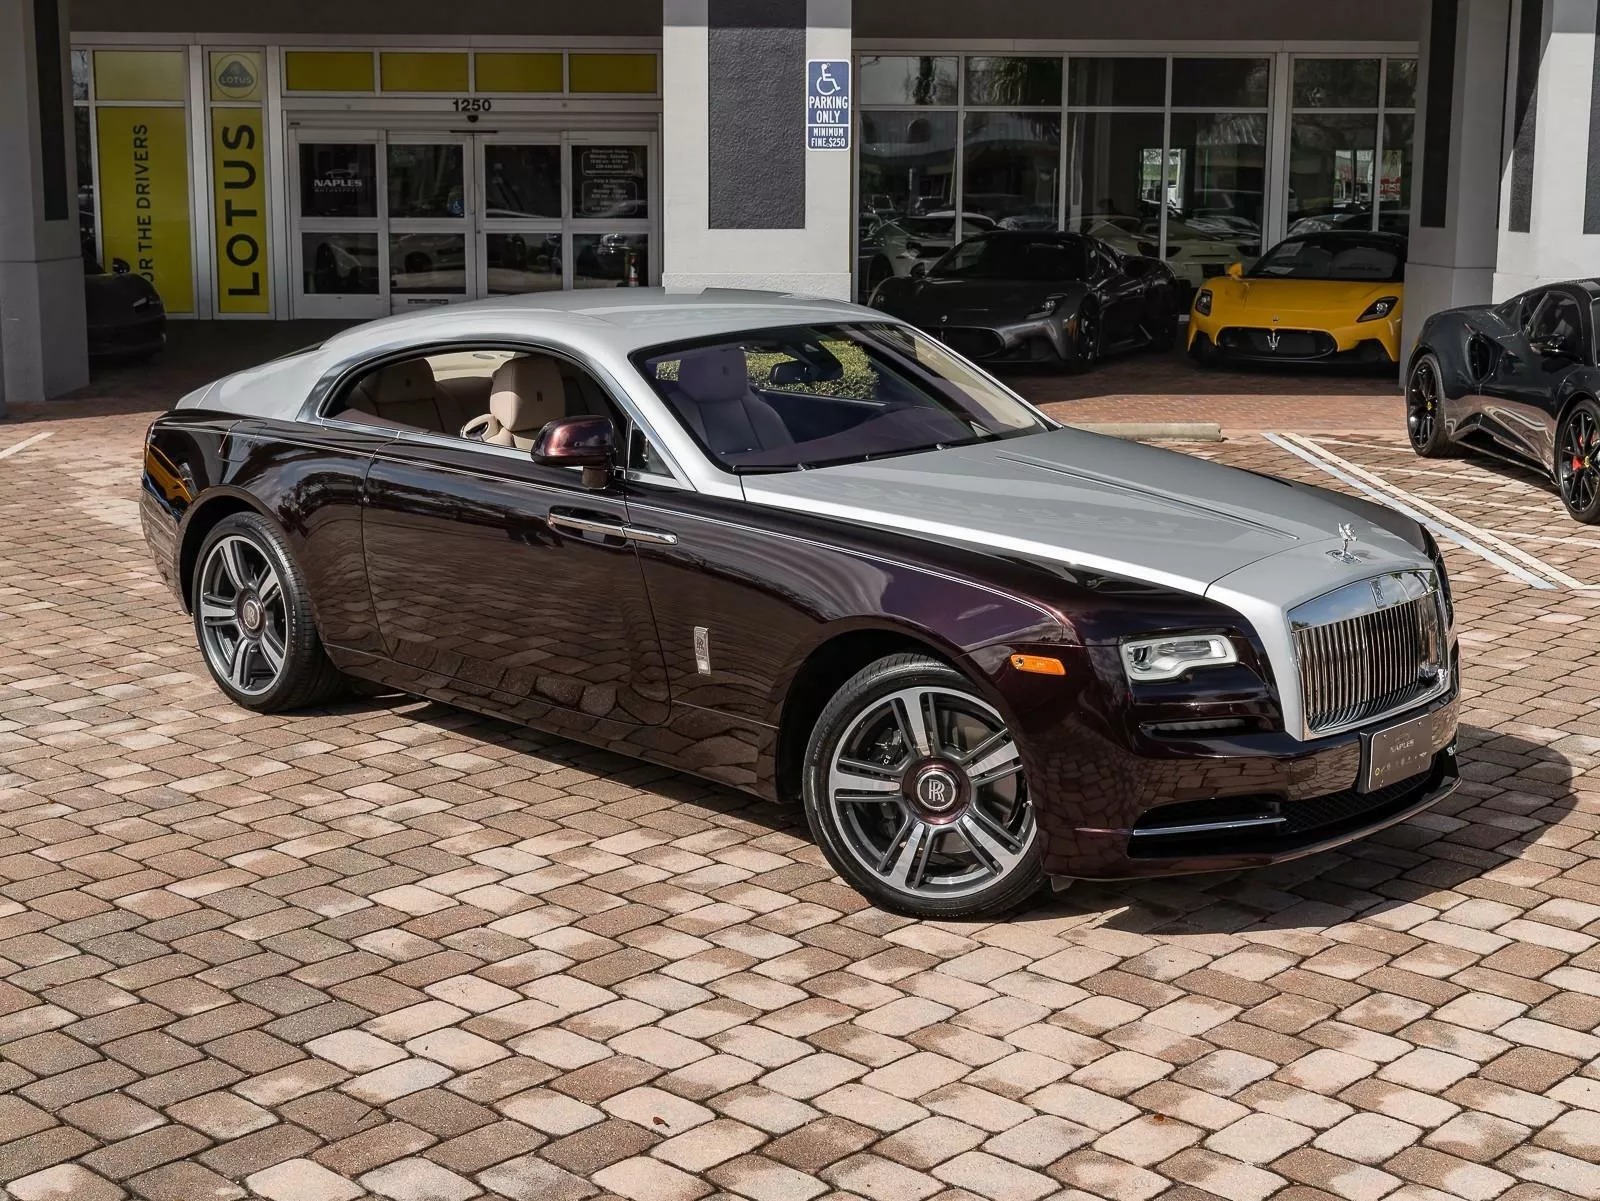 Rao bán Bugatti Chiron giá quy đổi hơn 95 tỷ đồng, chủ xe hứa tặng kèm Rolls-Royce Wraith hợp tông màu- Ảnh 6.